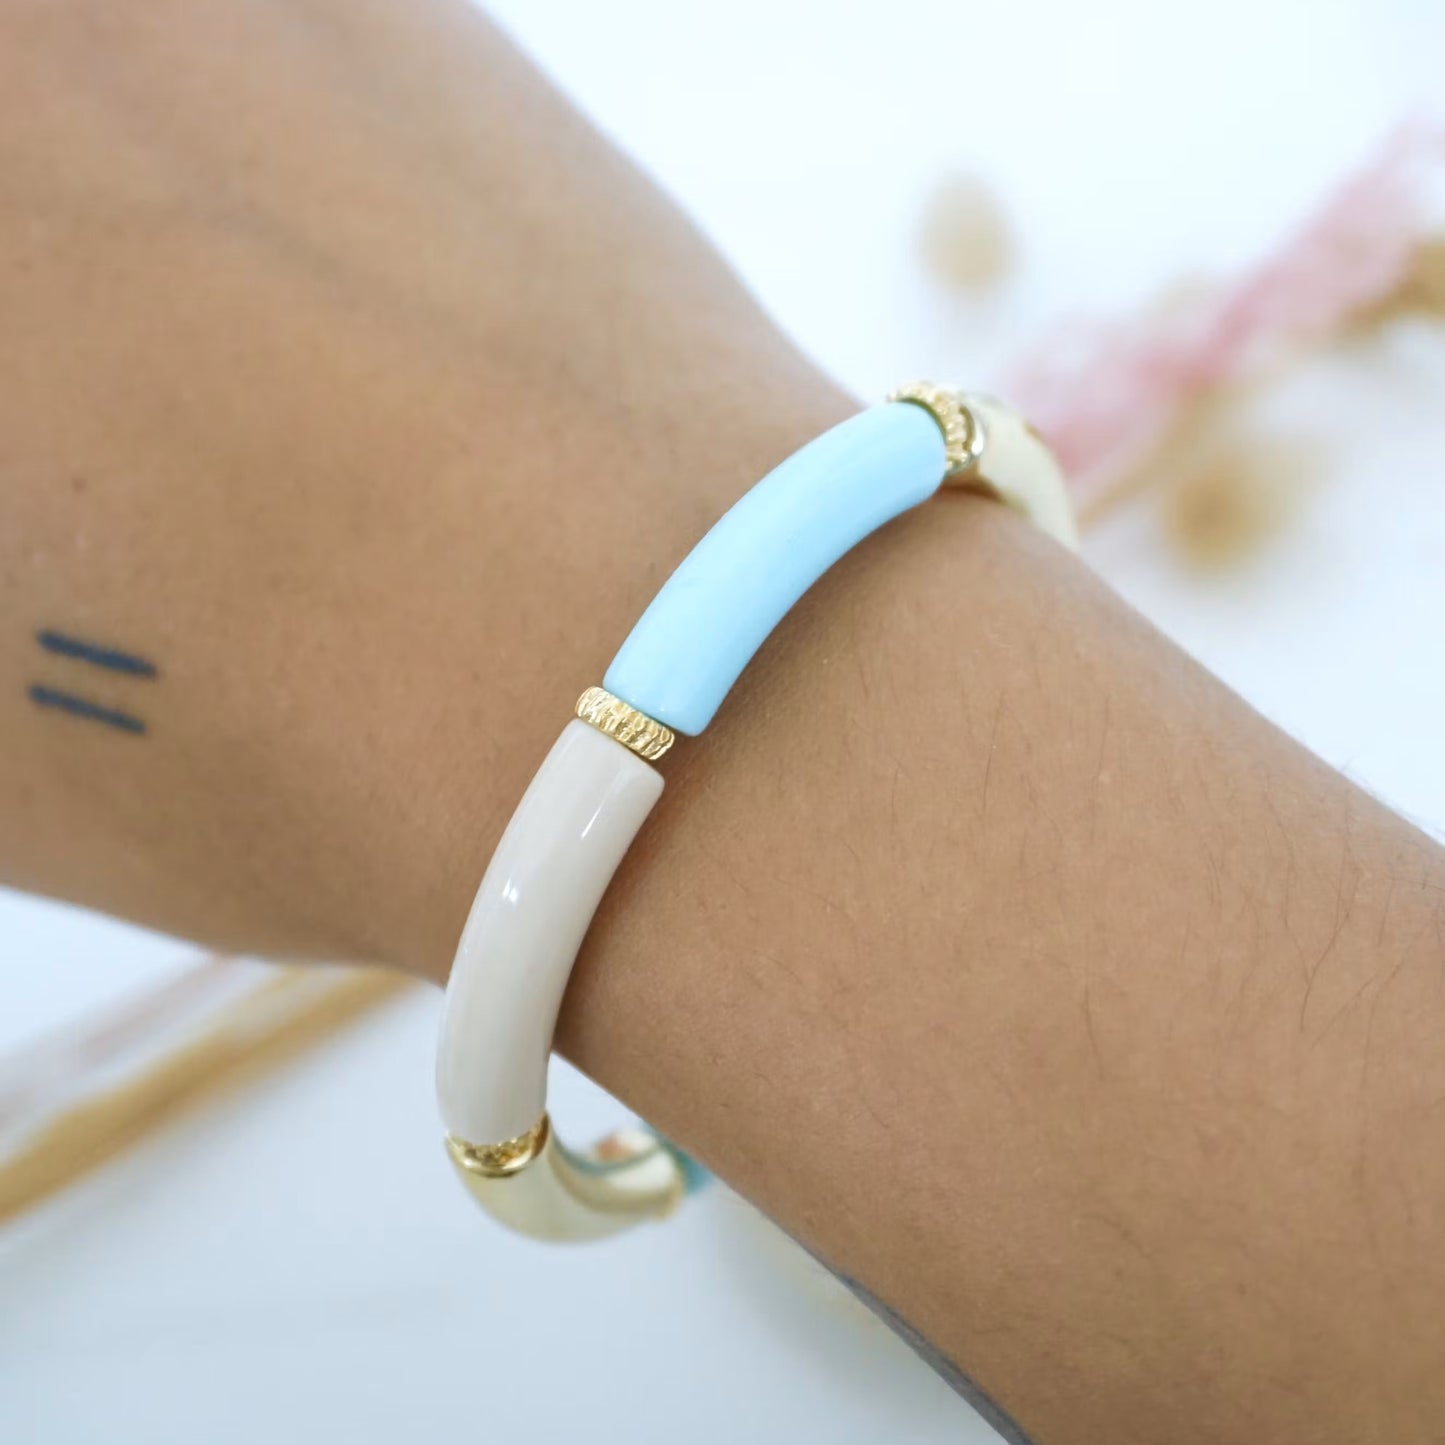 Fedi bracelet | Sky blue